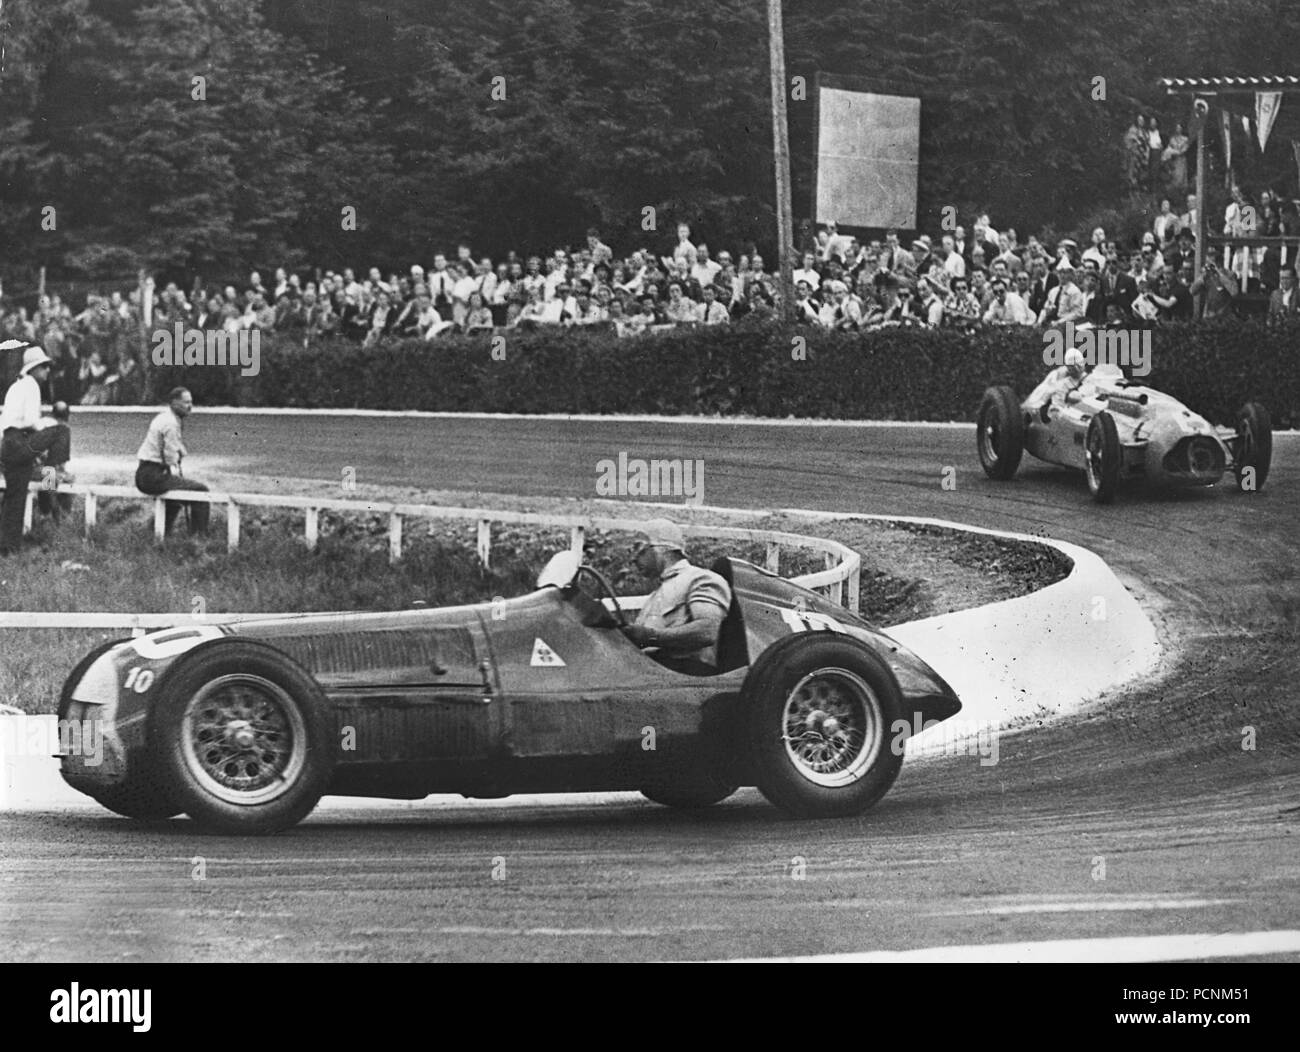 Alfa Romeo 158, Fangio. Belgien Grand Prix in Spa, 18/6/1950 Stockfoto